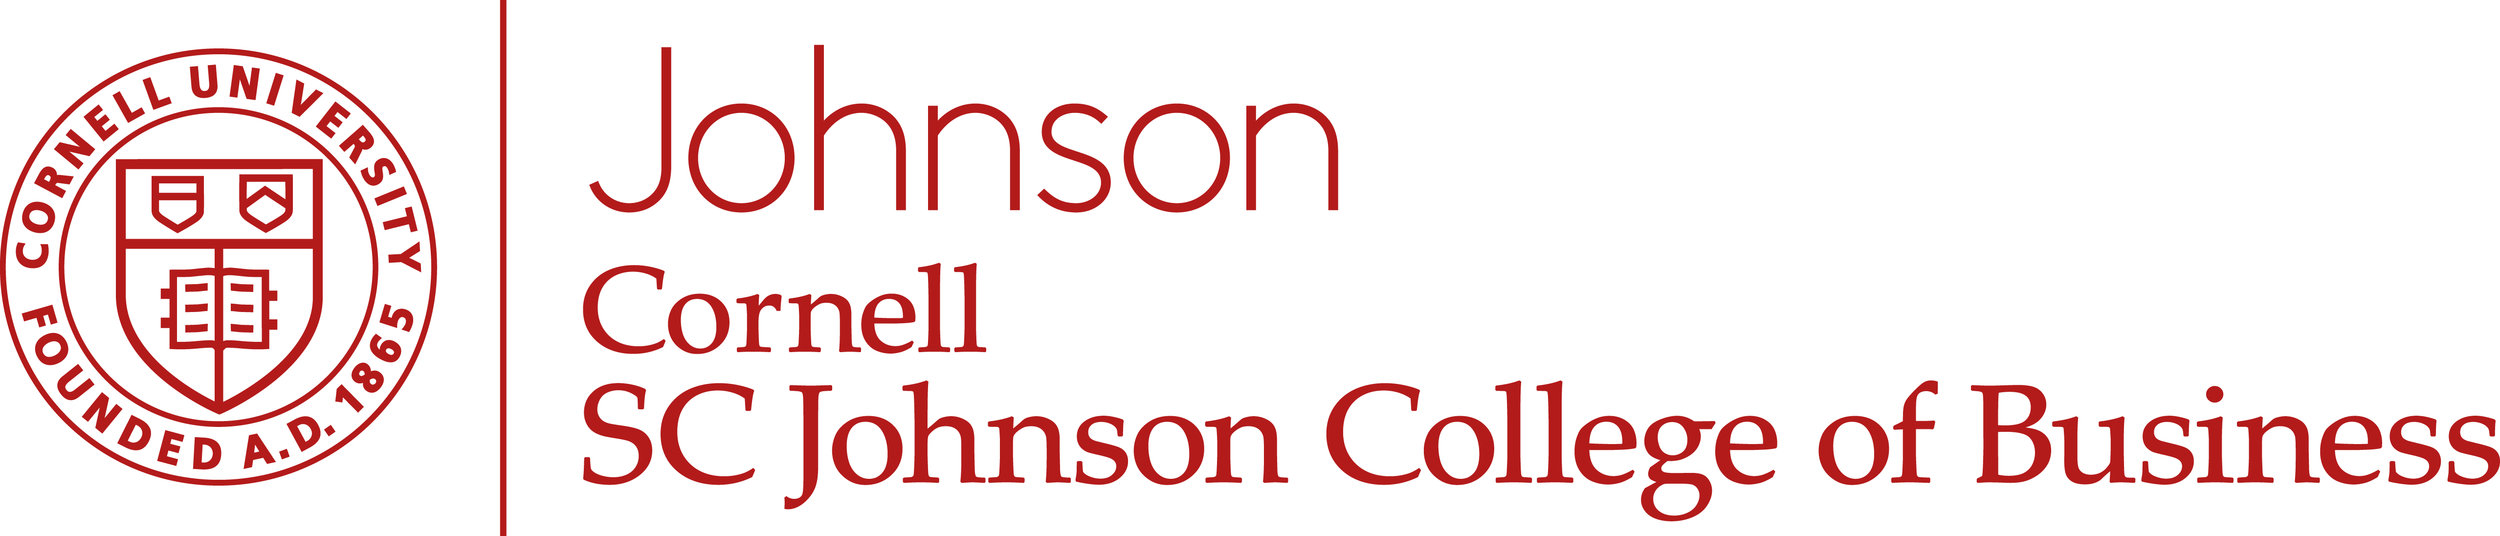 Johnson-logo-rgb.jpg